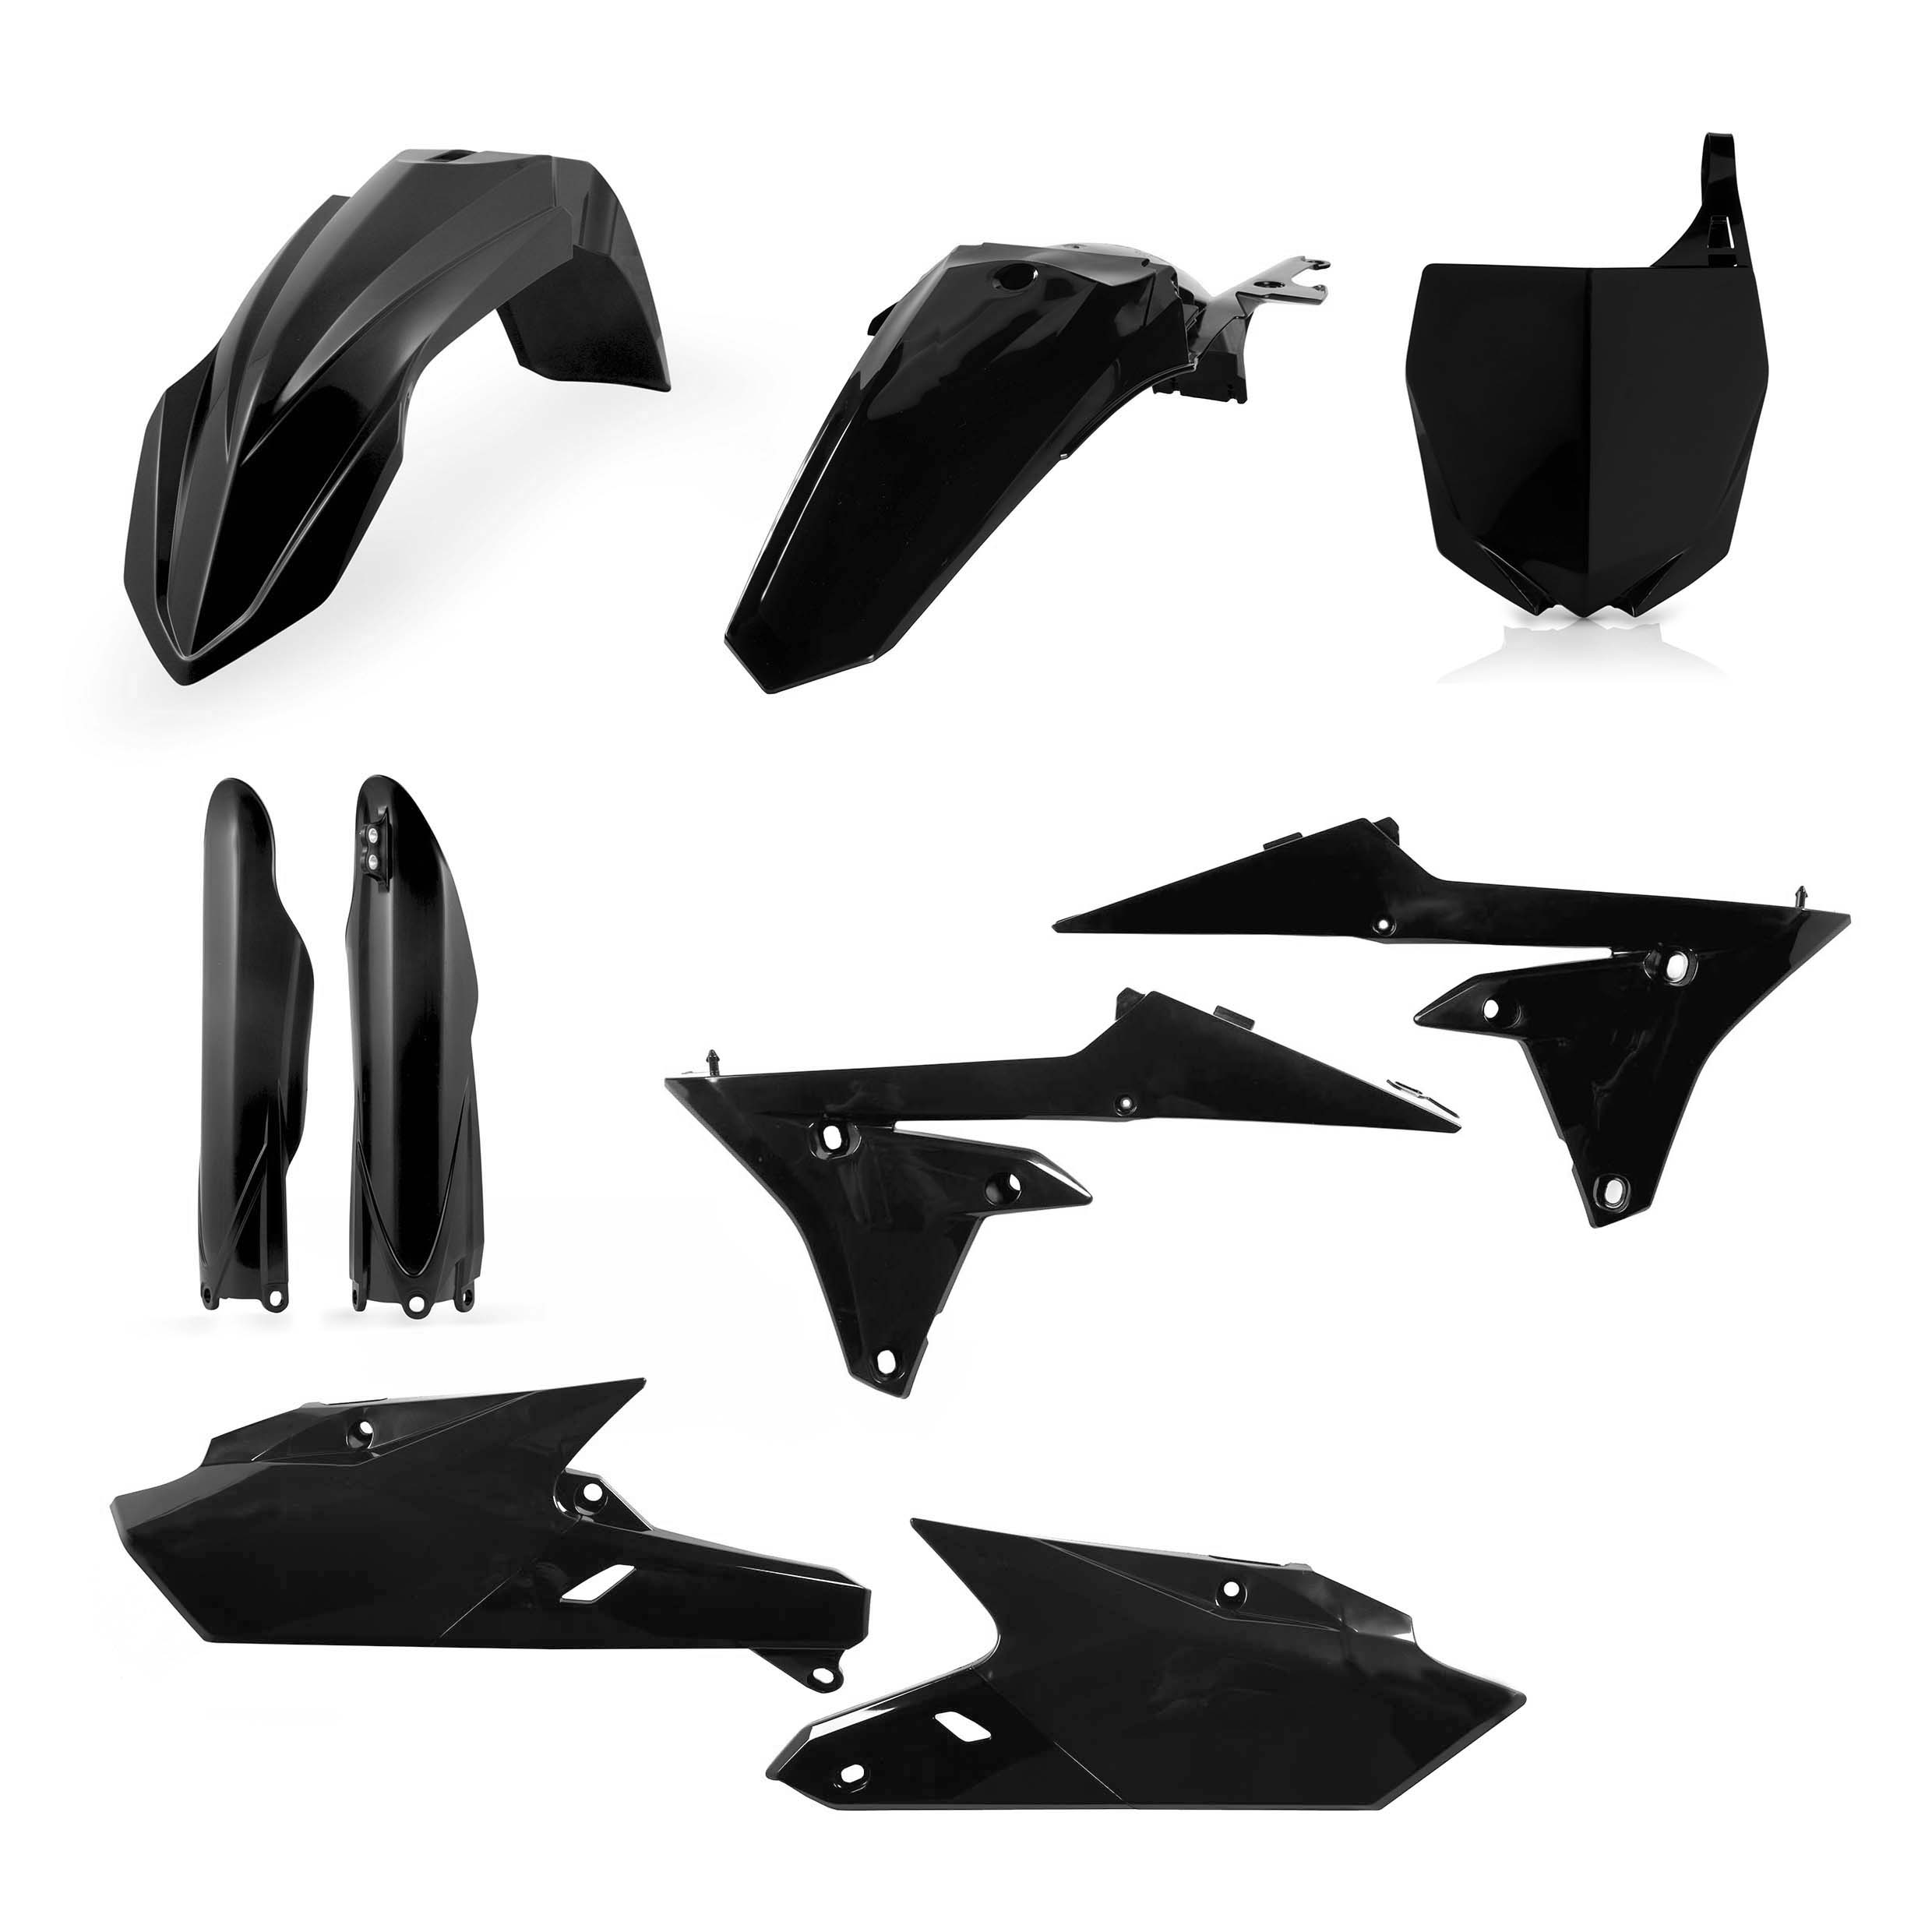 Plastikteile für deine Yamaha YZ 250/450 in schwarz bestehend aus Kotflügel vorn Kotflügel hinten Kühlerspoiler Seitenteile Gabelschützer Startnummerntafel